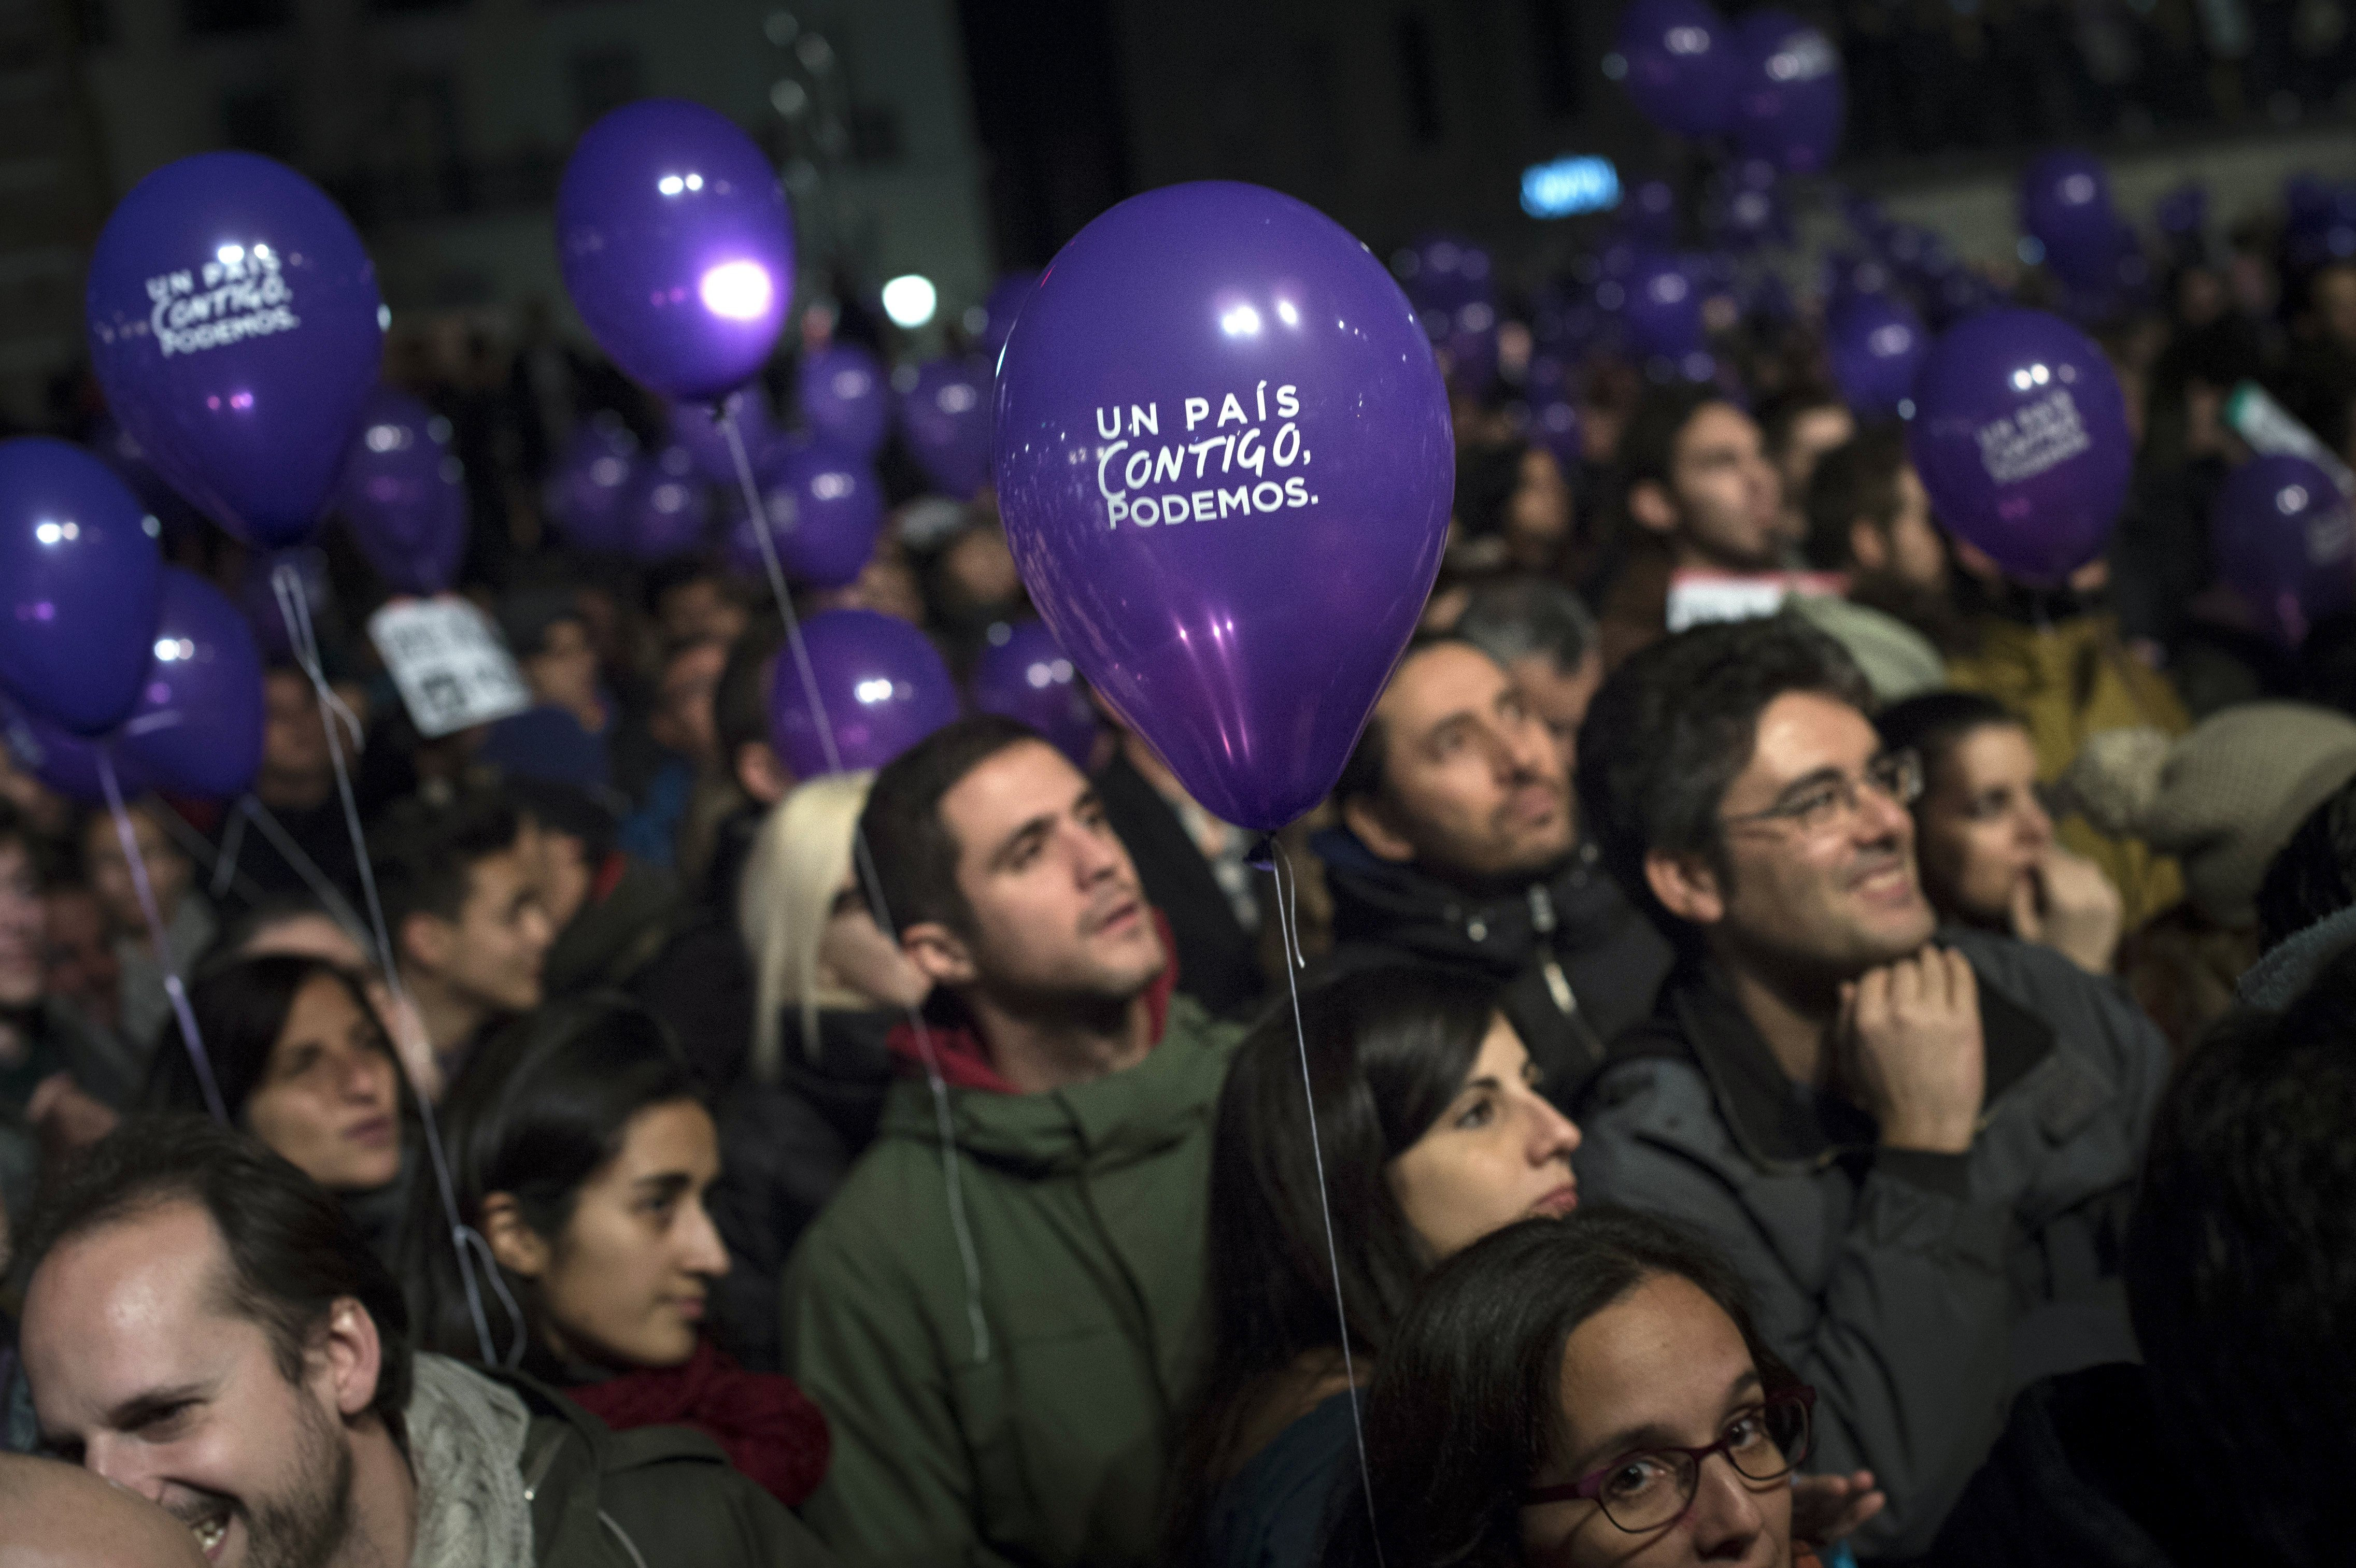 Simpatizantes de Podemos escuchan la comparecencia del director de campaña de Podemos, Íñigo Errejón, tras conocerse los primeros datos del escrutinio de las elecciones generales, en la Plaza del Reina Sofía, en Madrid. EFE/Luca Piergiovanni